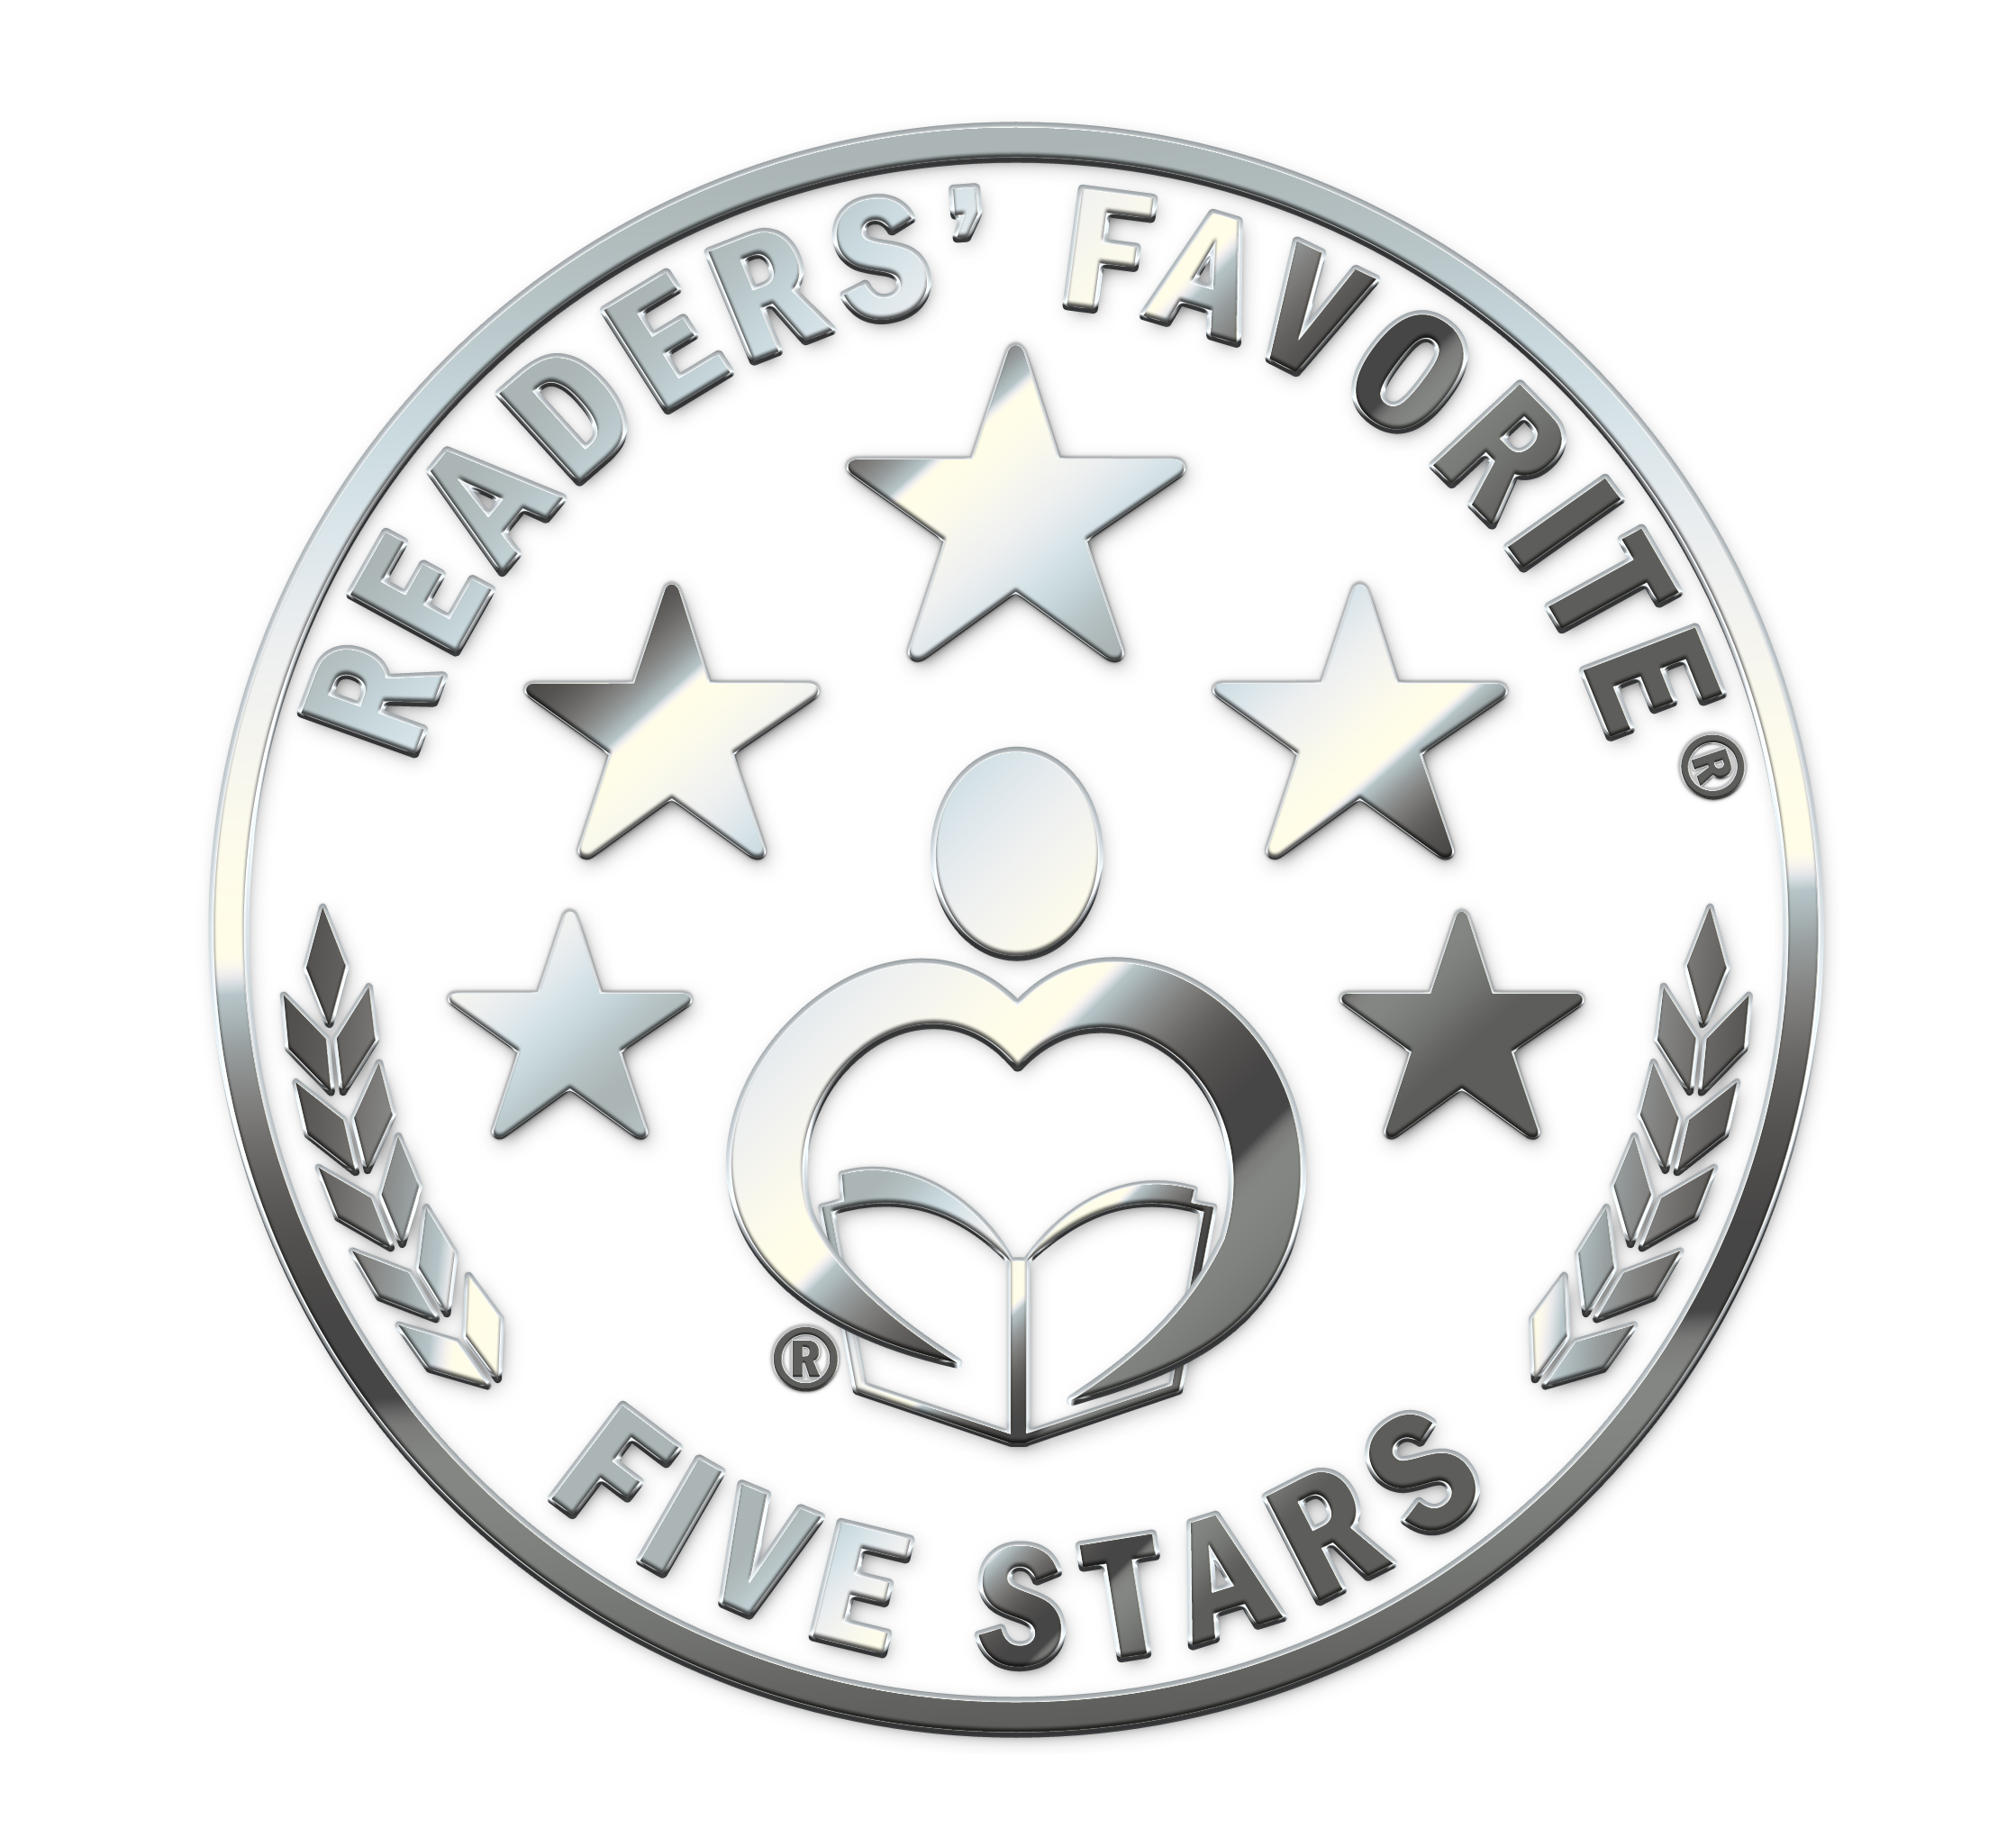 Readear's Favorite Five Stars